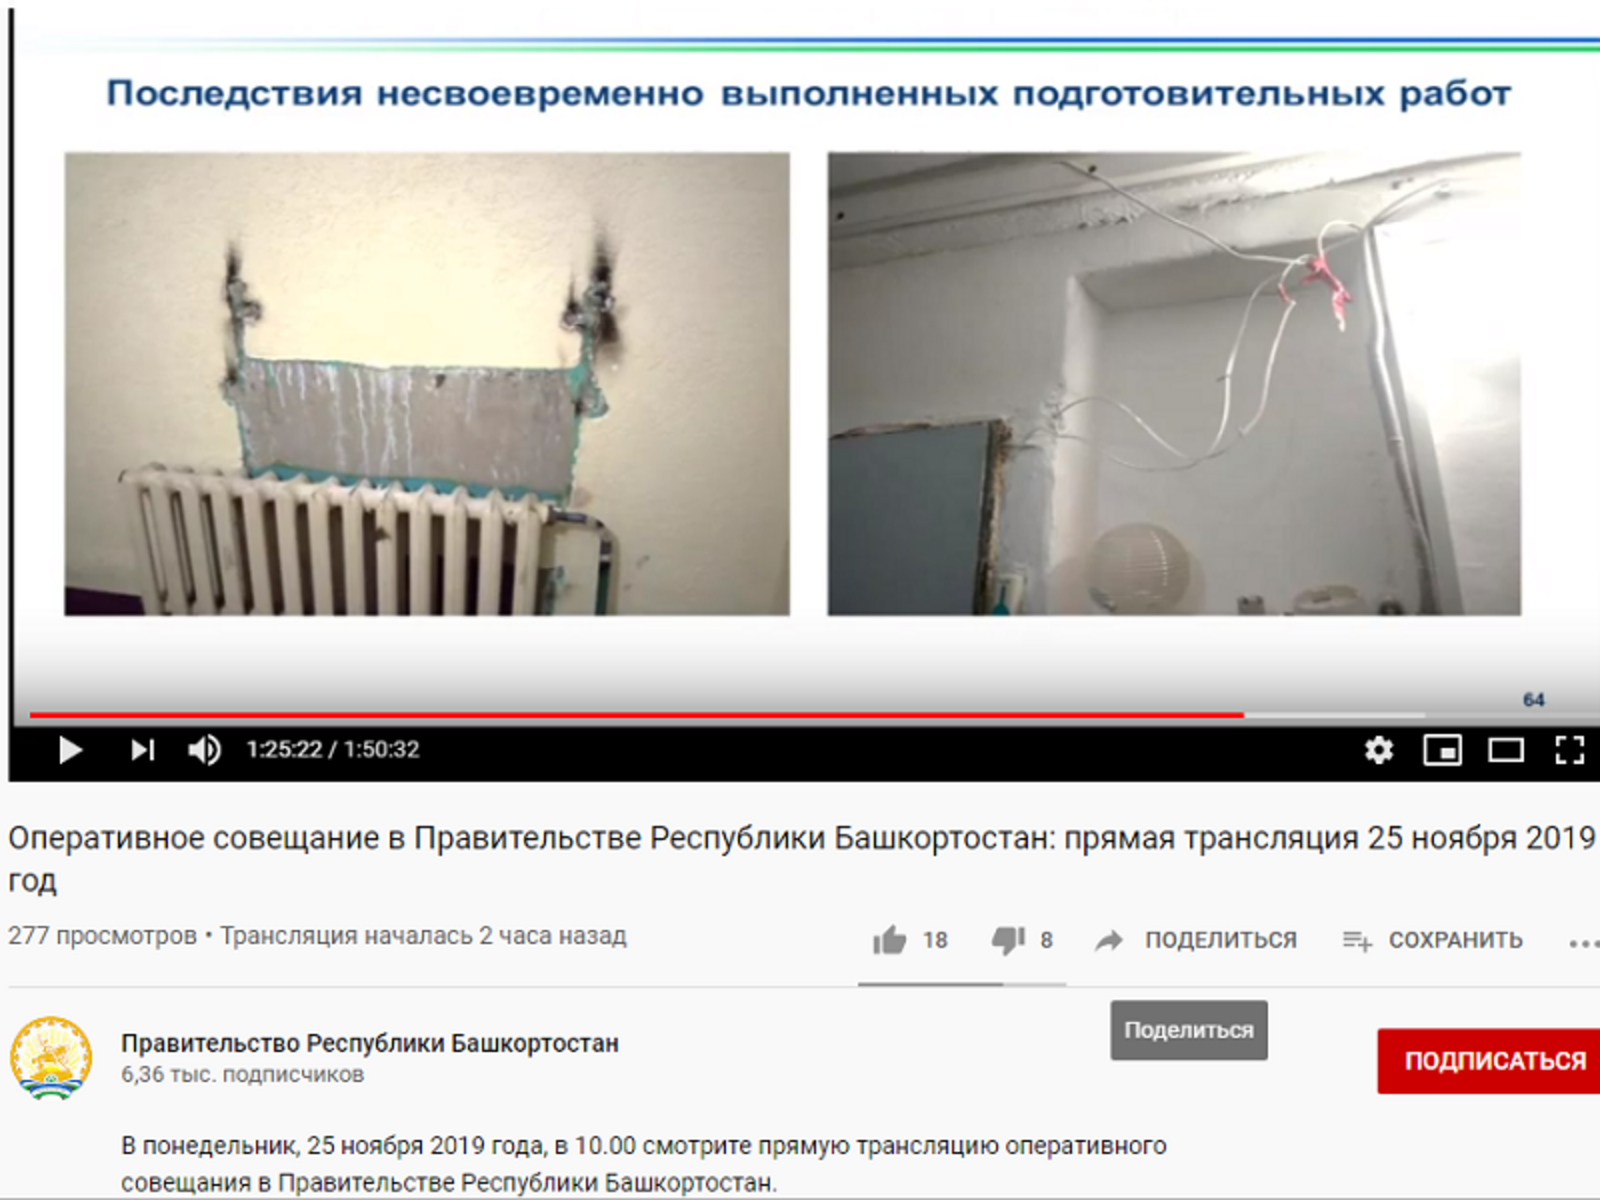 Скрин с видео оперативного совещания в правительстве РБ.